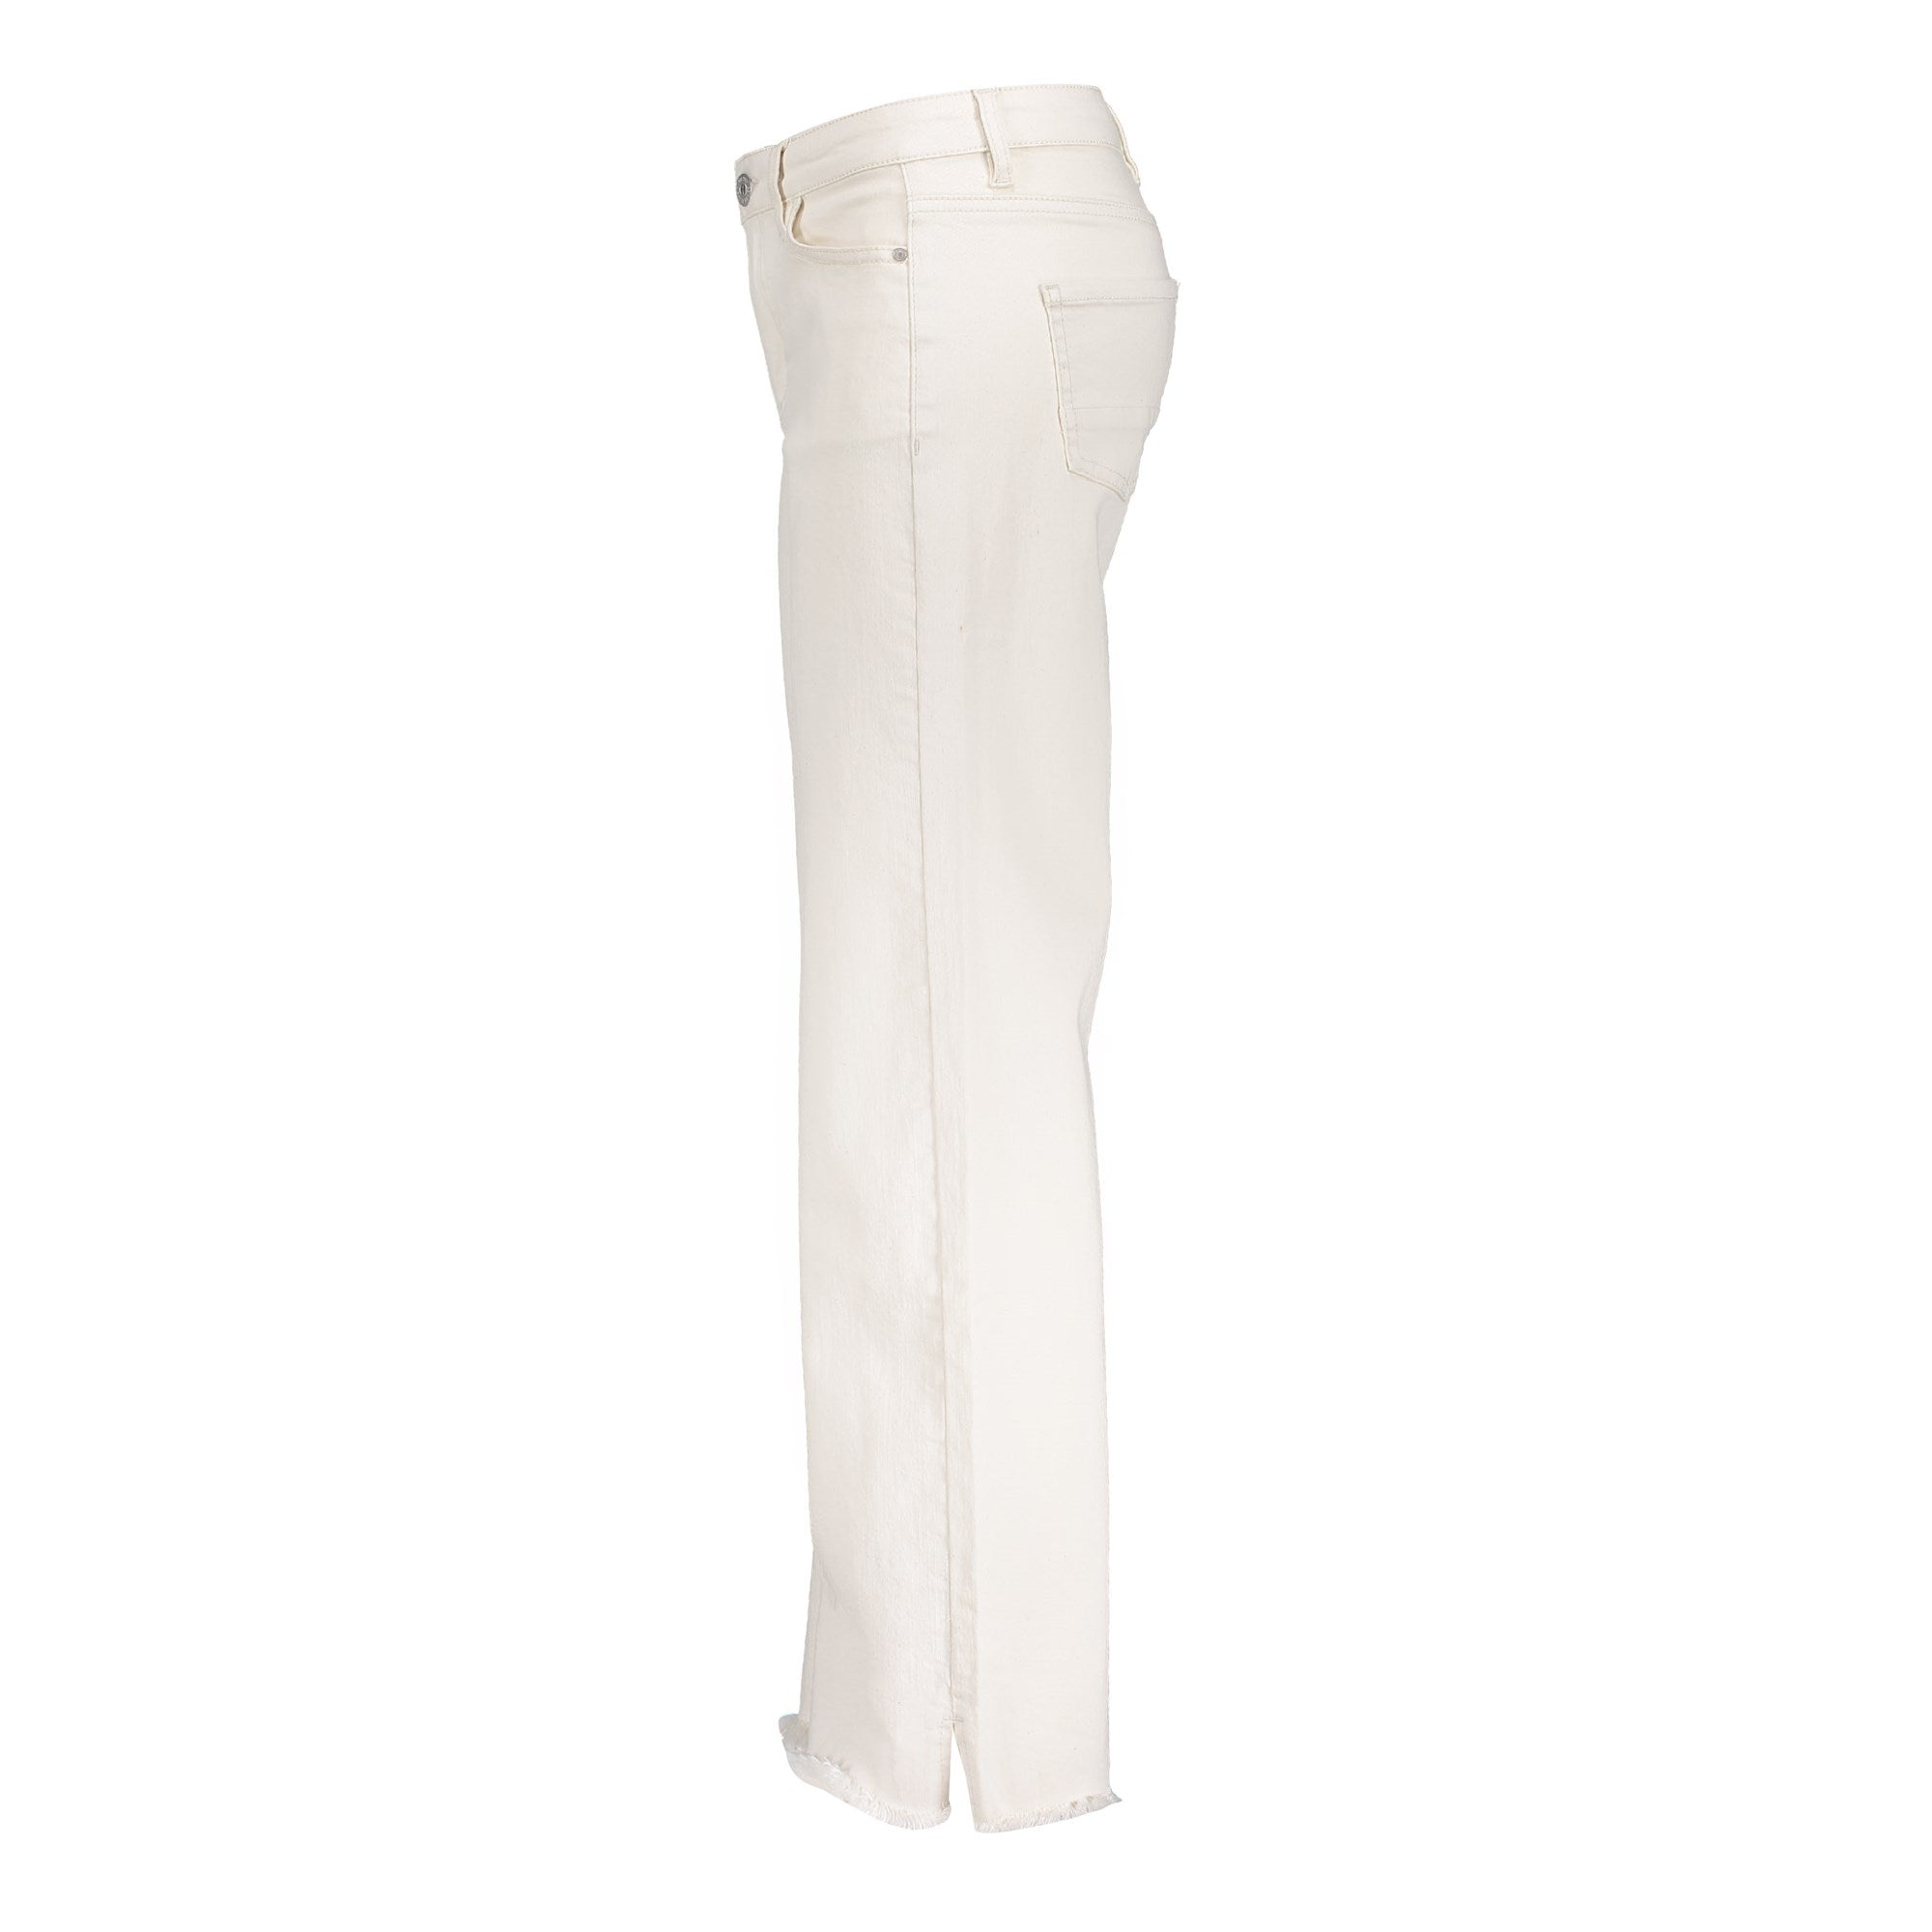 Meisjes Jeans wide + split van Geisha in de kleur Ecru/White in maat 176.